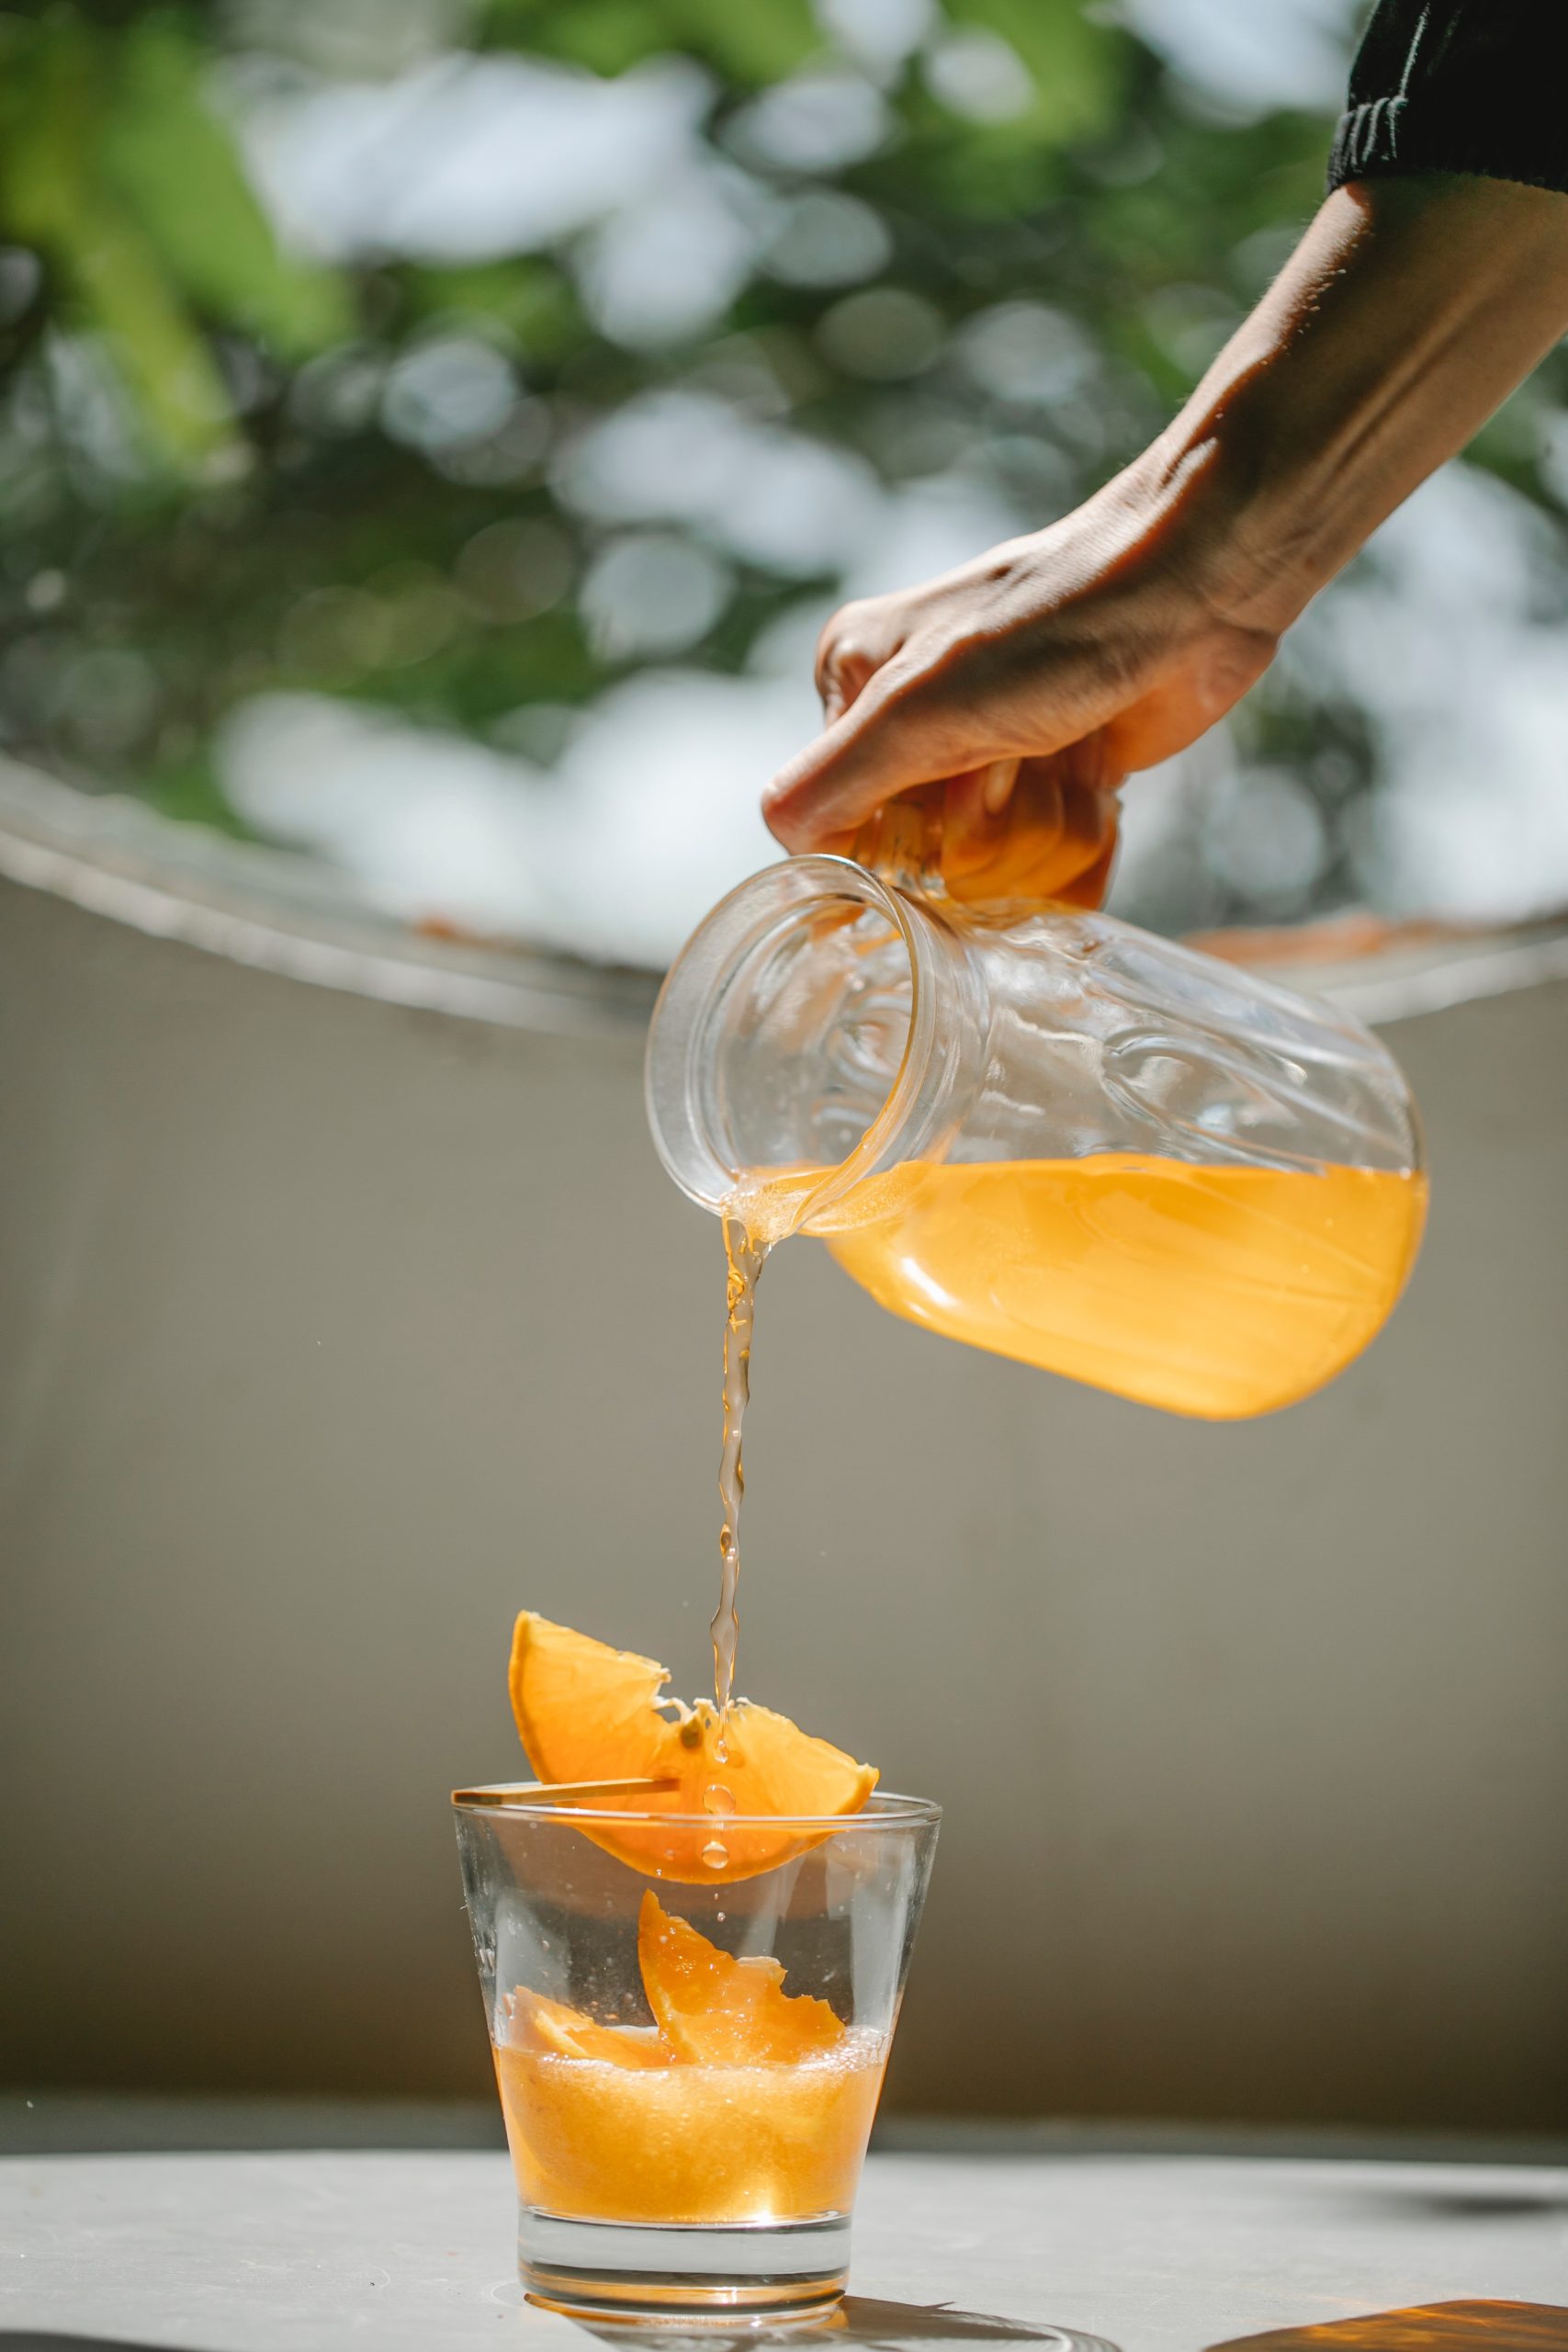 Είναι ο χυμός πορτοκάλι τόσο ωφέλιμος όσο πιστεύεις;